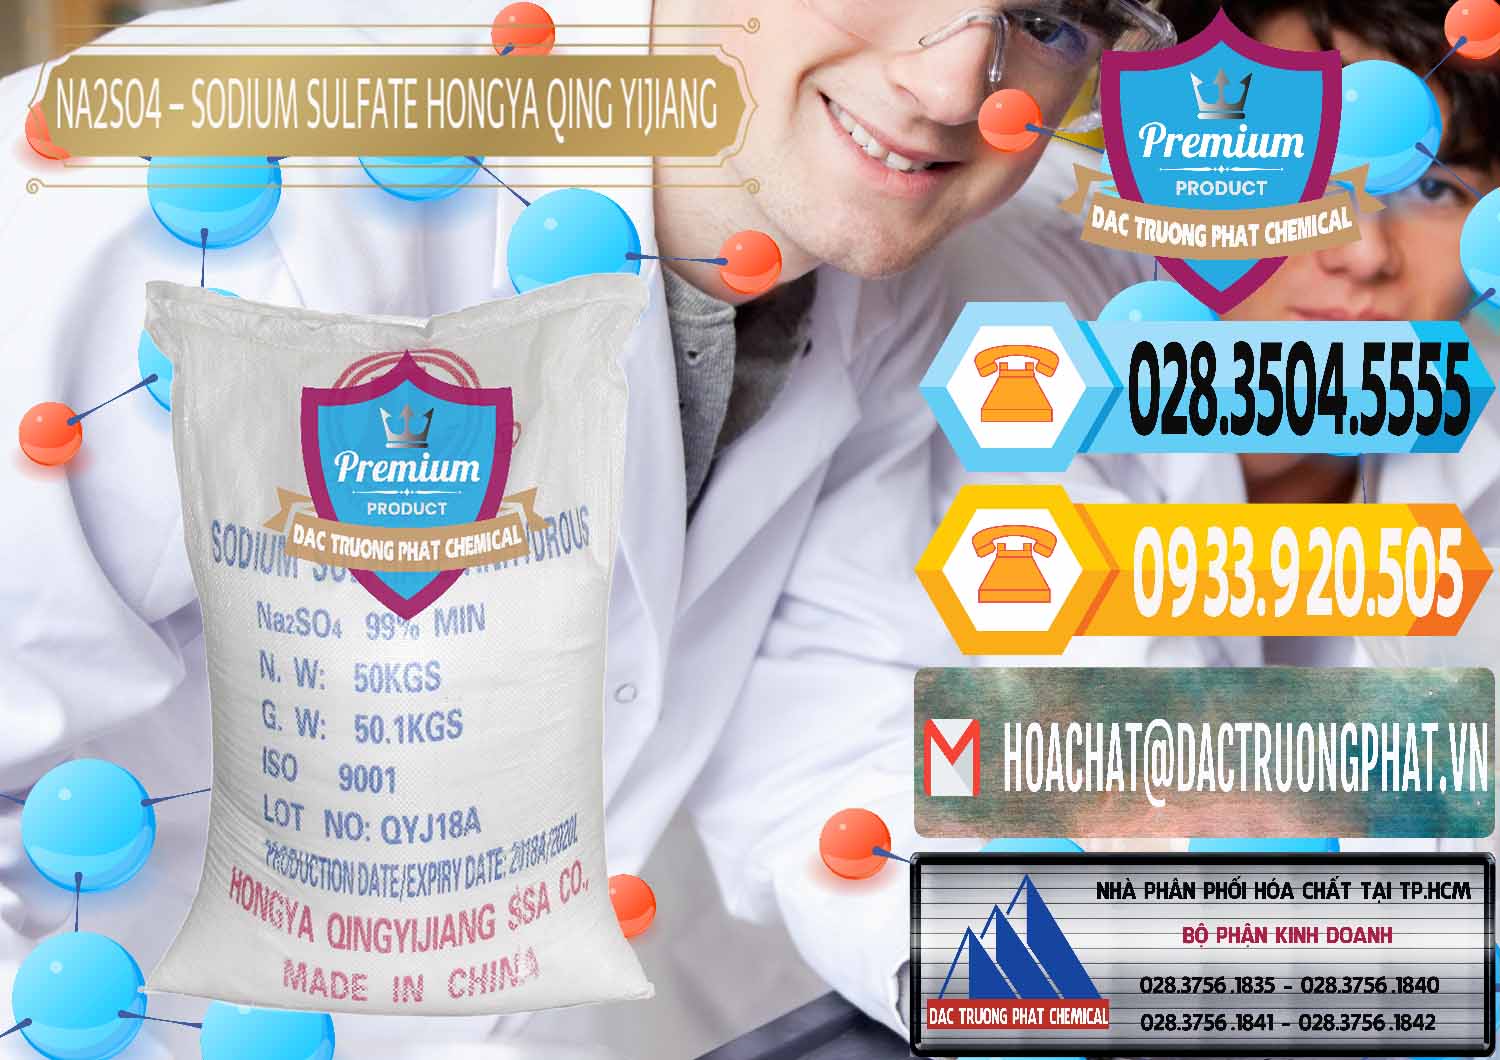 Nơi chuyên nhập khẩu & bán Sodium Sulphate - Muối Sunfat Na2SO4 Logo Cánh Bườm Hongya Qing Yi Trung Quốc China - 0098 - Đơn vị cung ứng & phân phối hóa chất tại TP.HCM - hoachattayrua.net